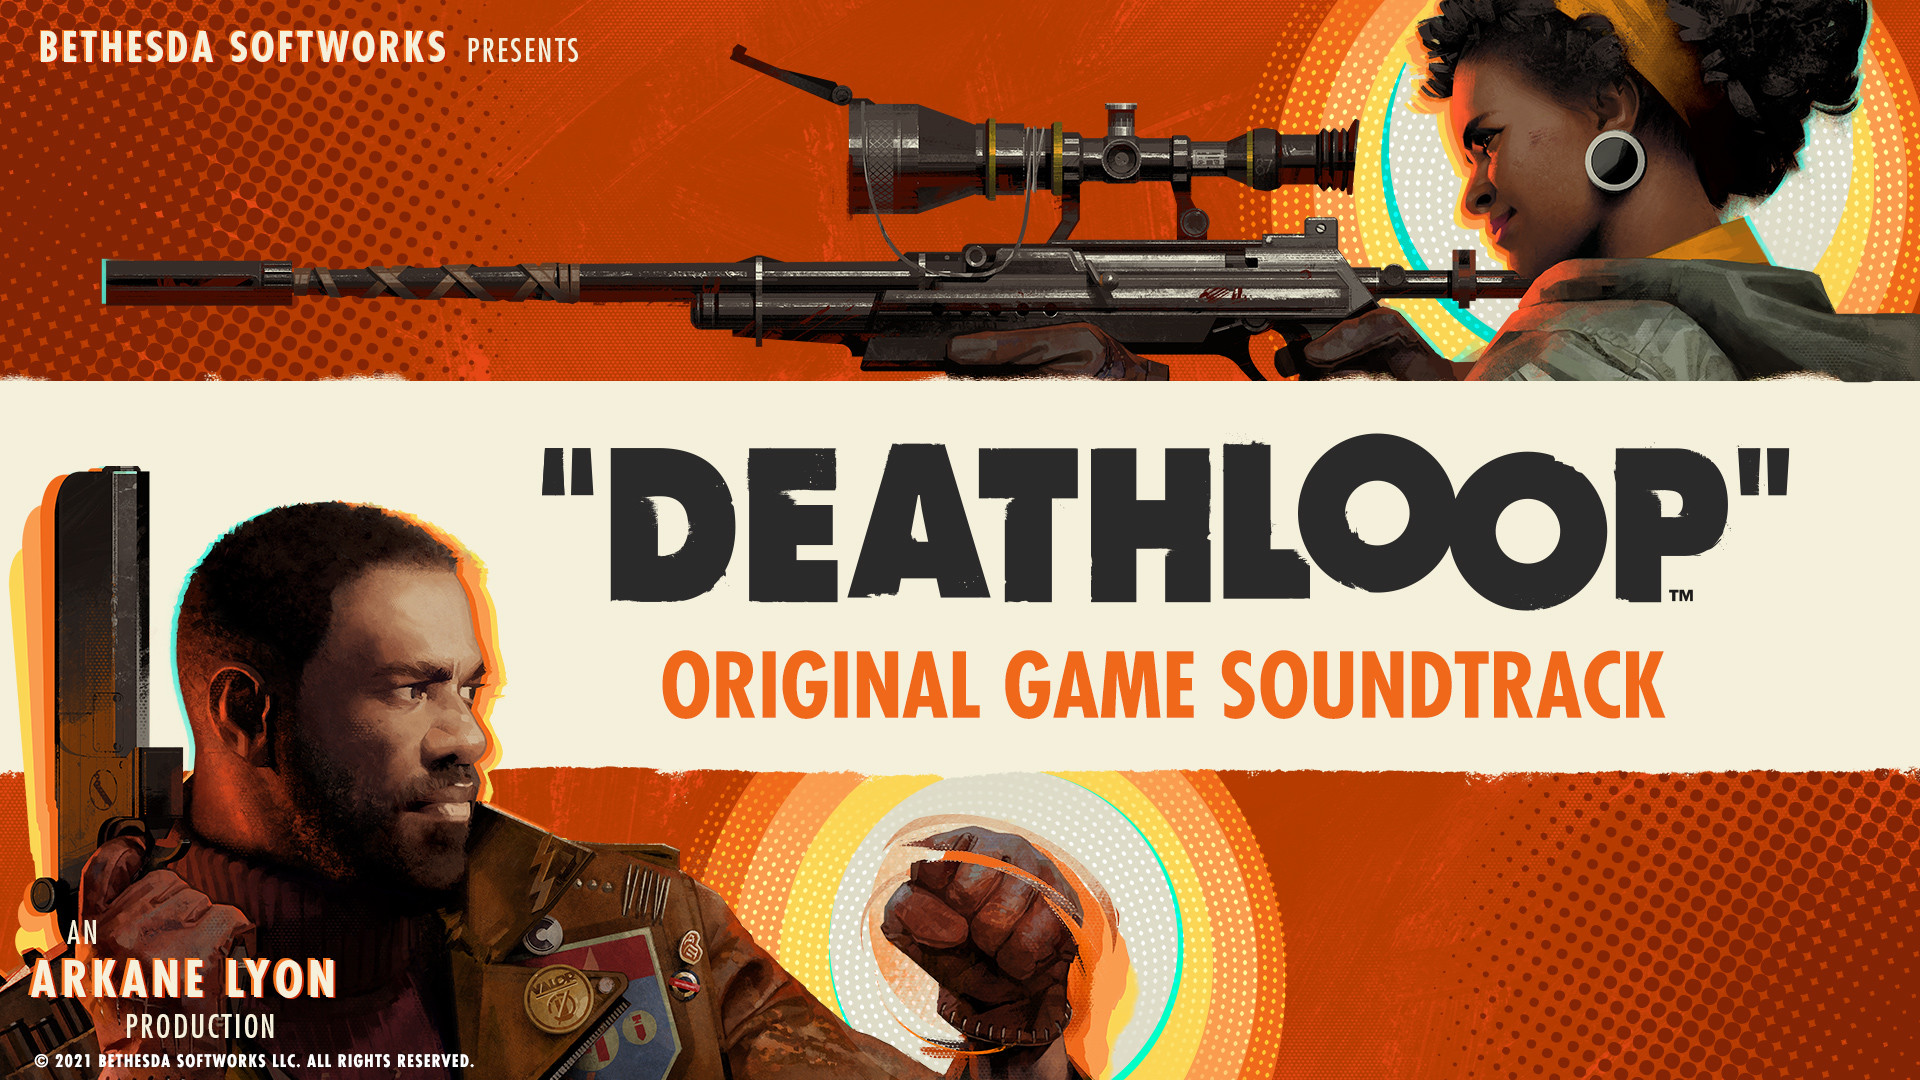 DEATHLOOP Original Game Soundtrack Featured Screenshot #1